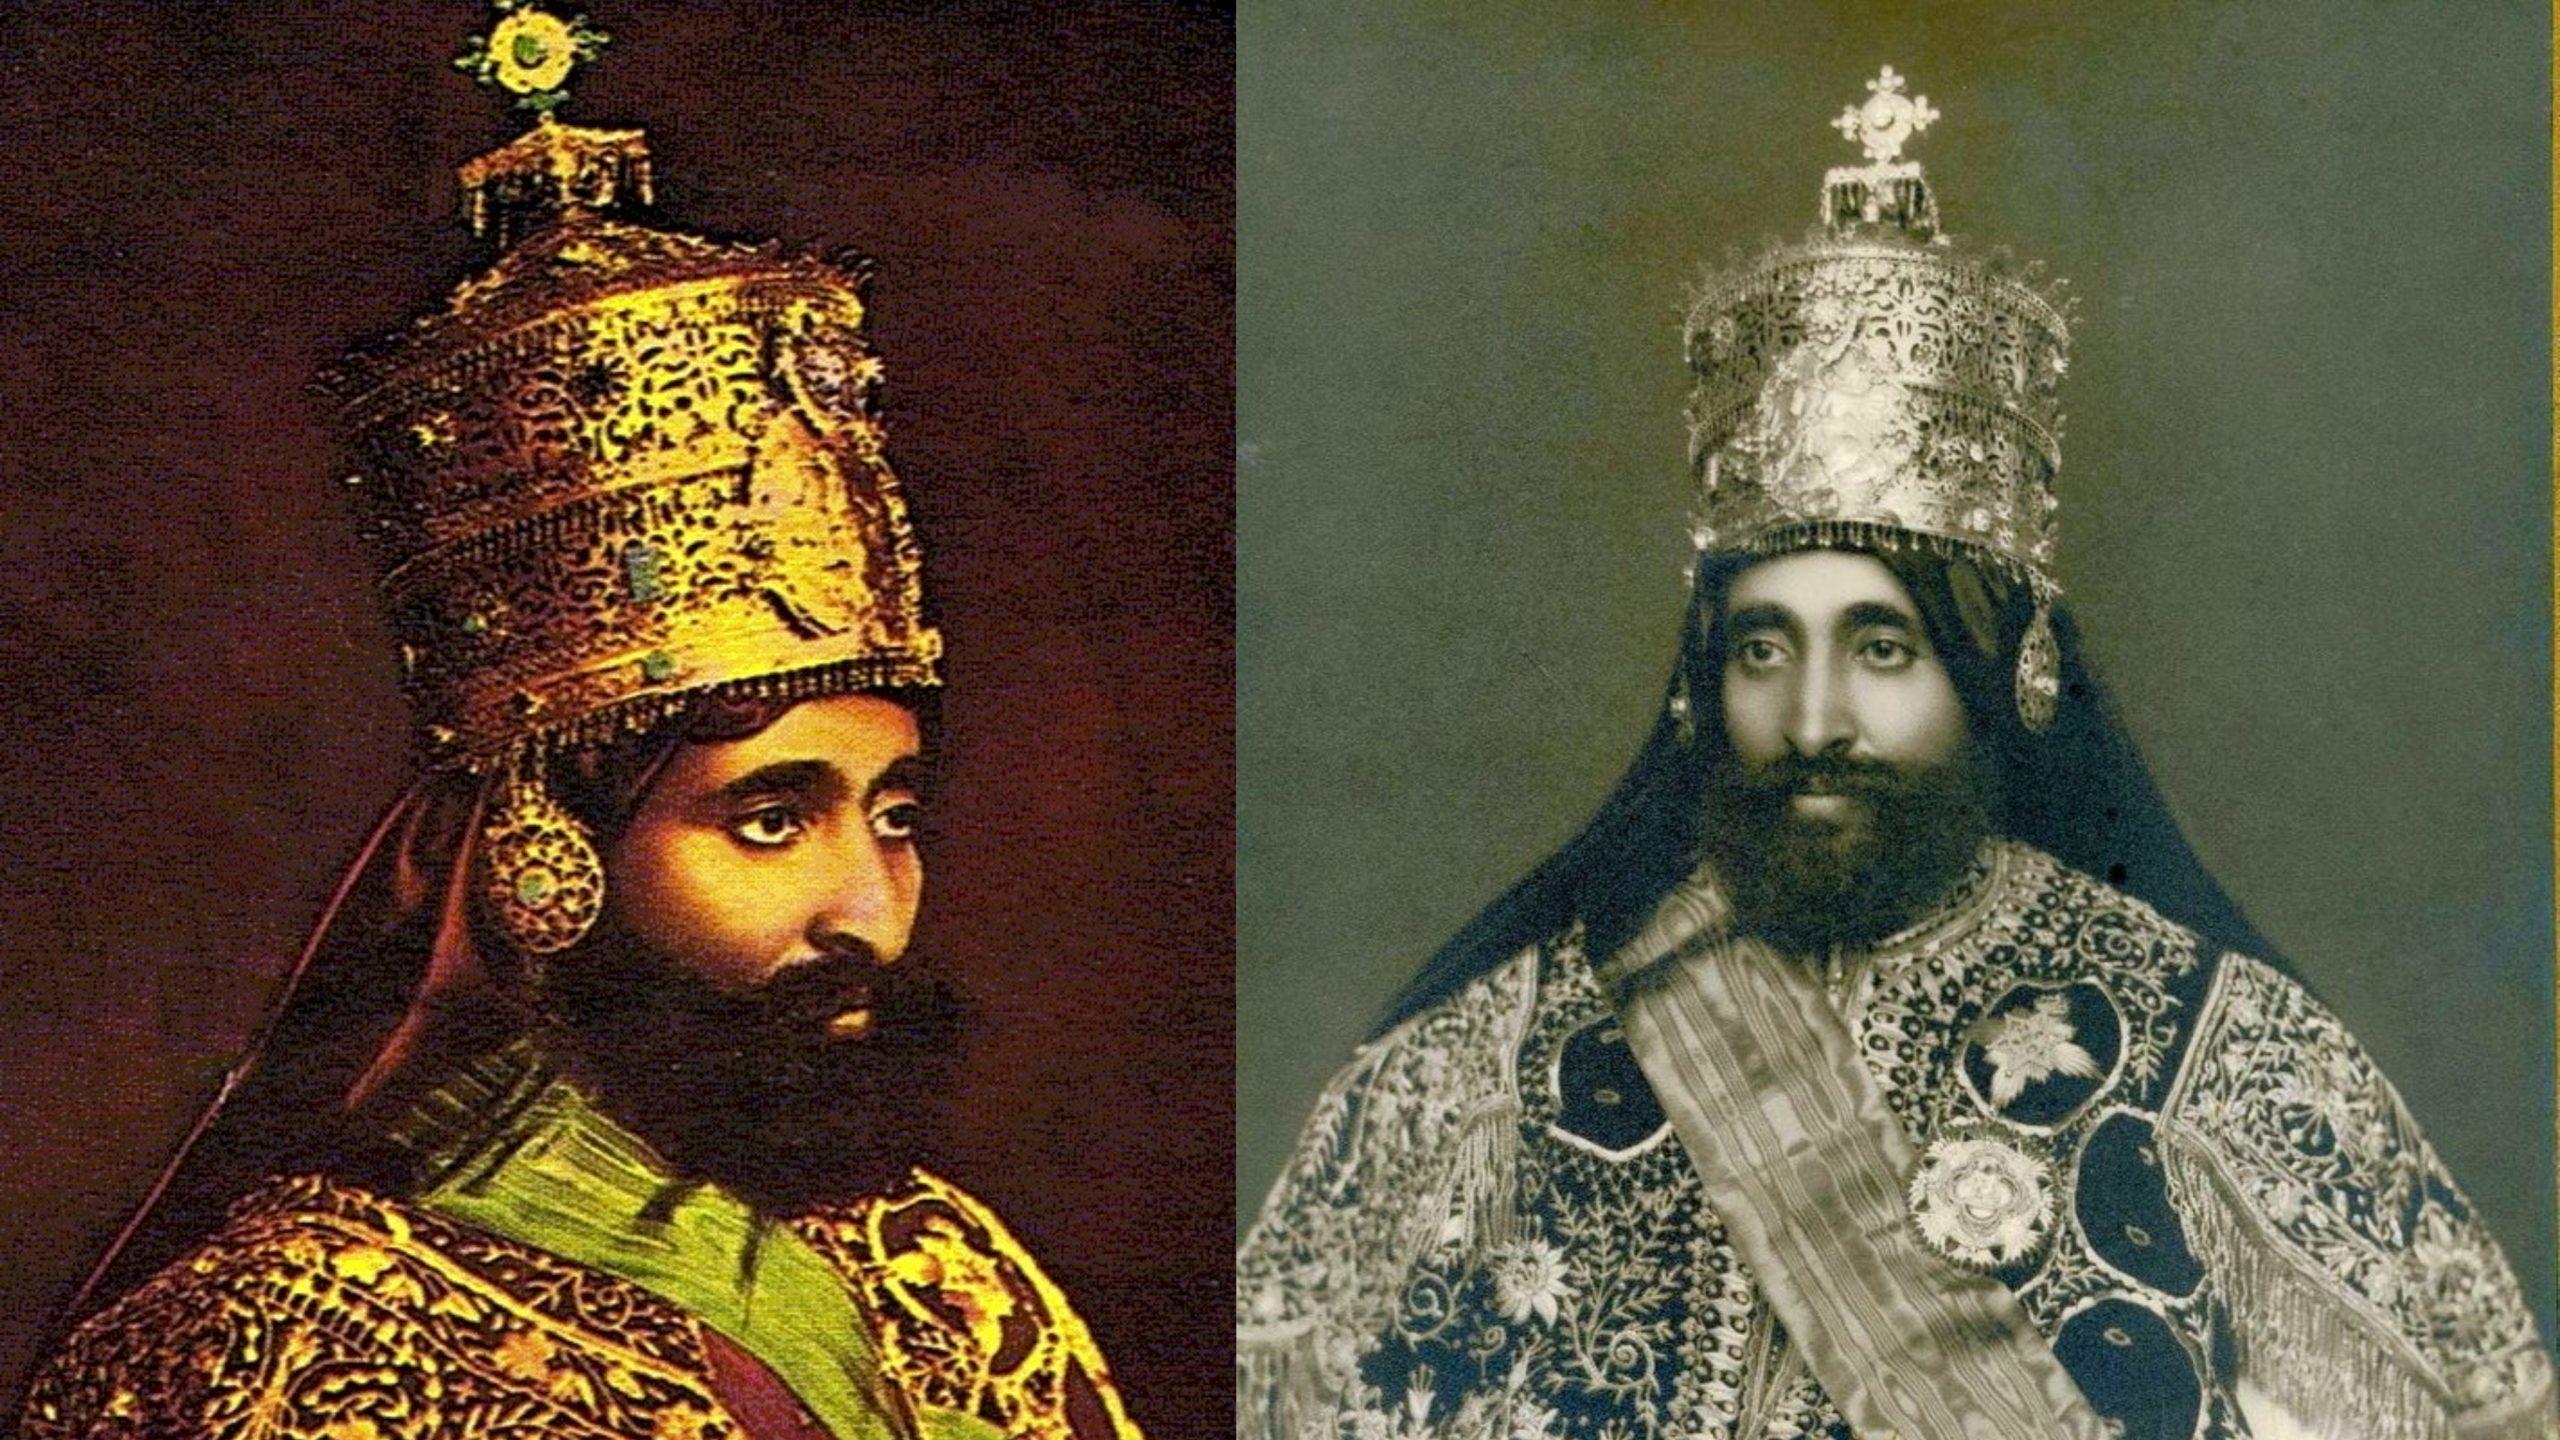 Emperor Haile Selassie reclaims his Ethiopian throne